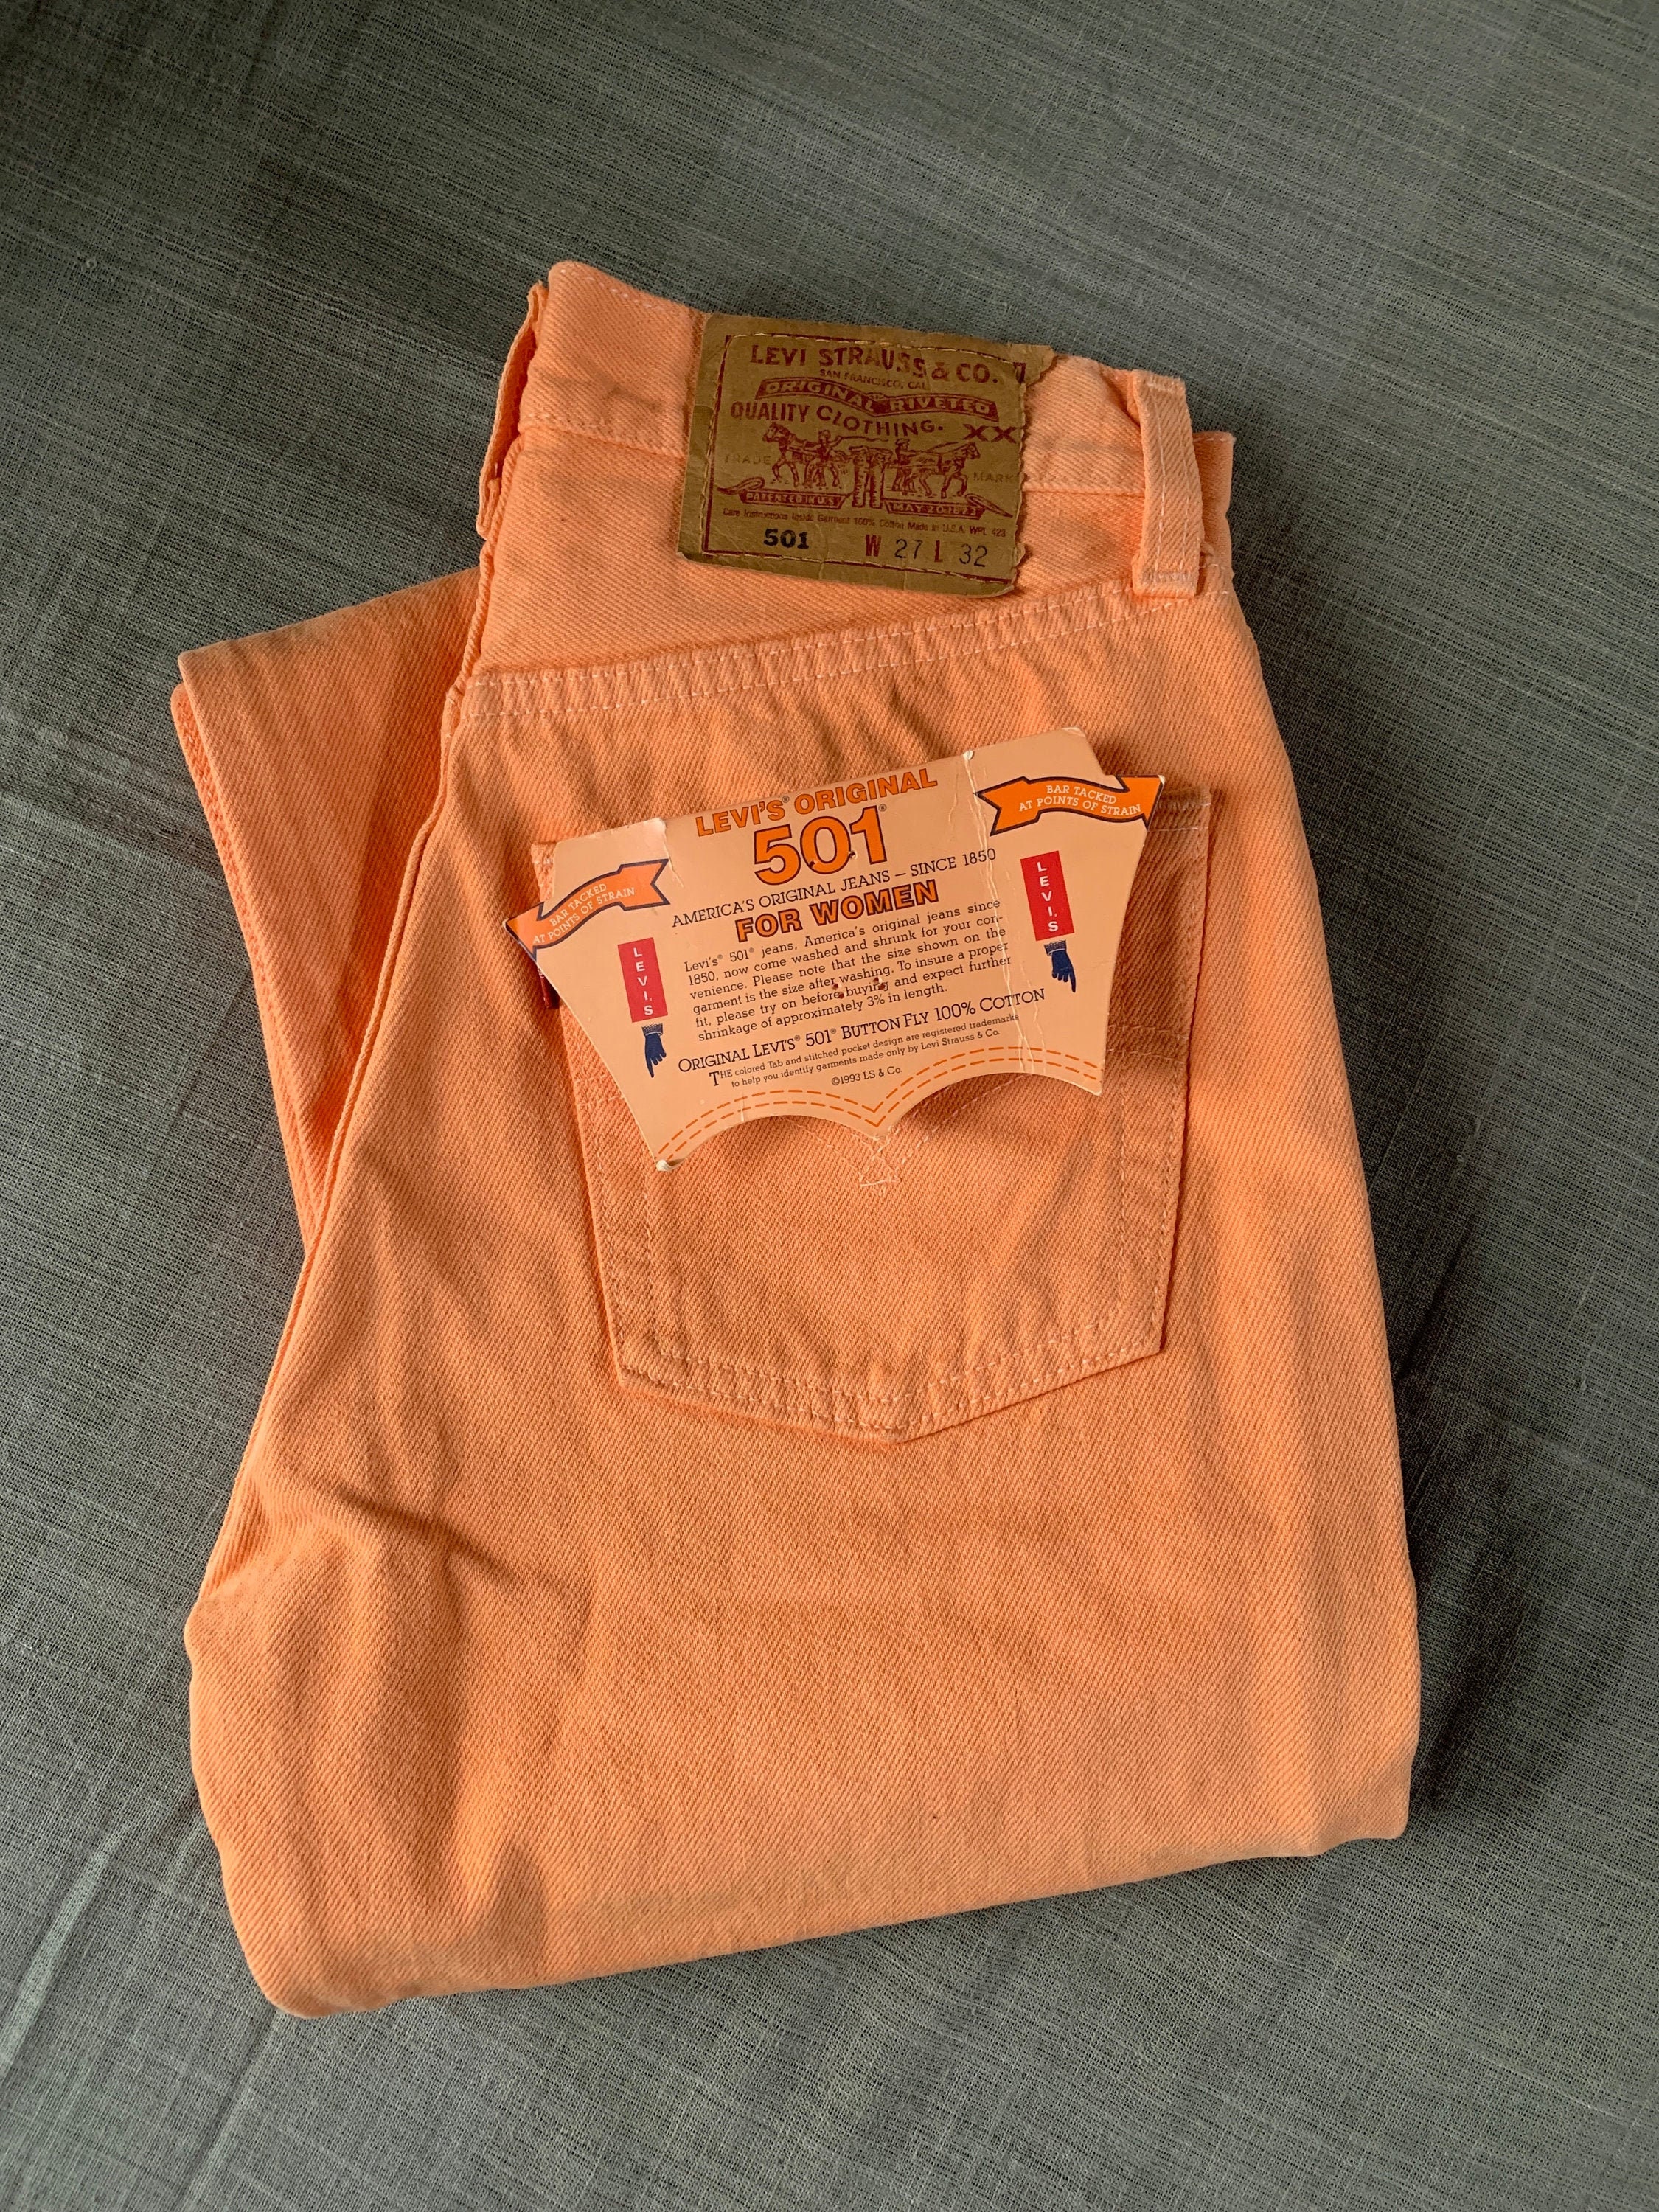 LEVIS 501 Garment Dyed Orange Denim USED From 90's - Etsy UK